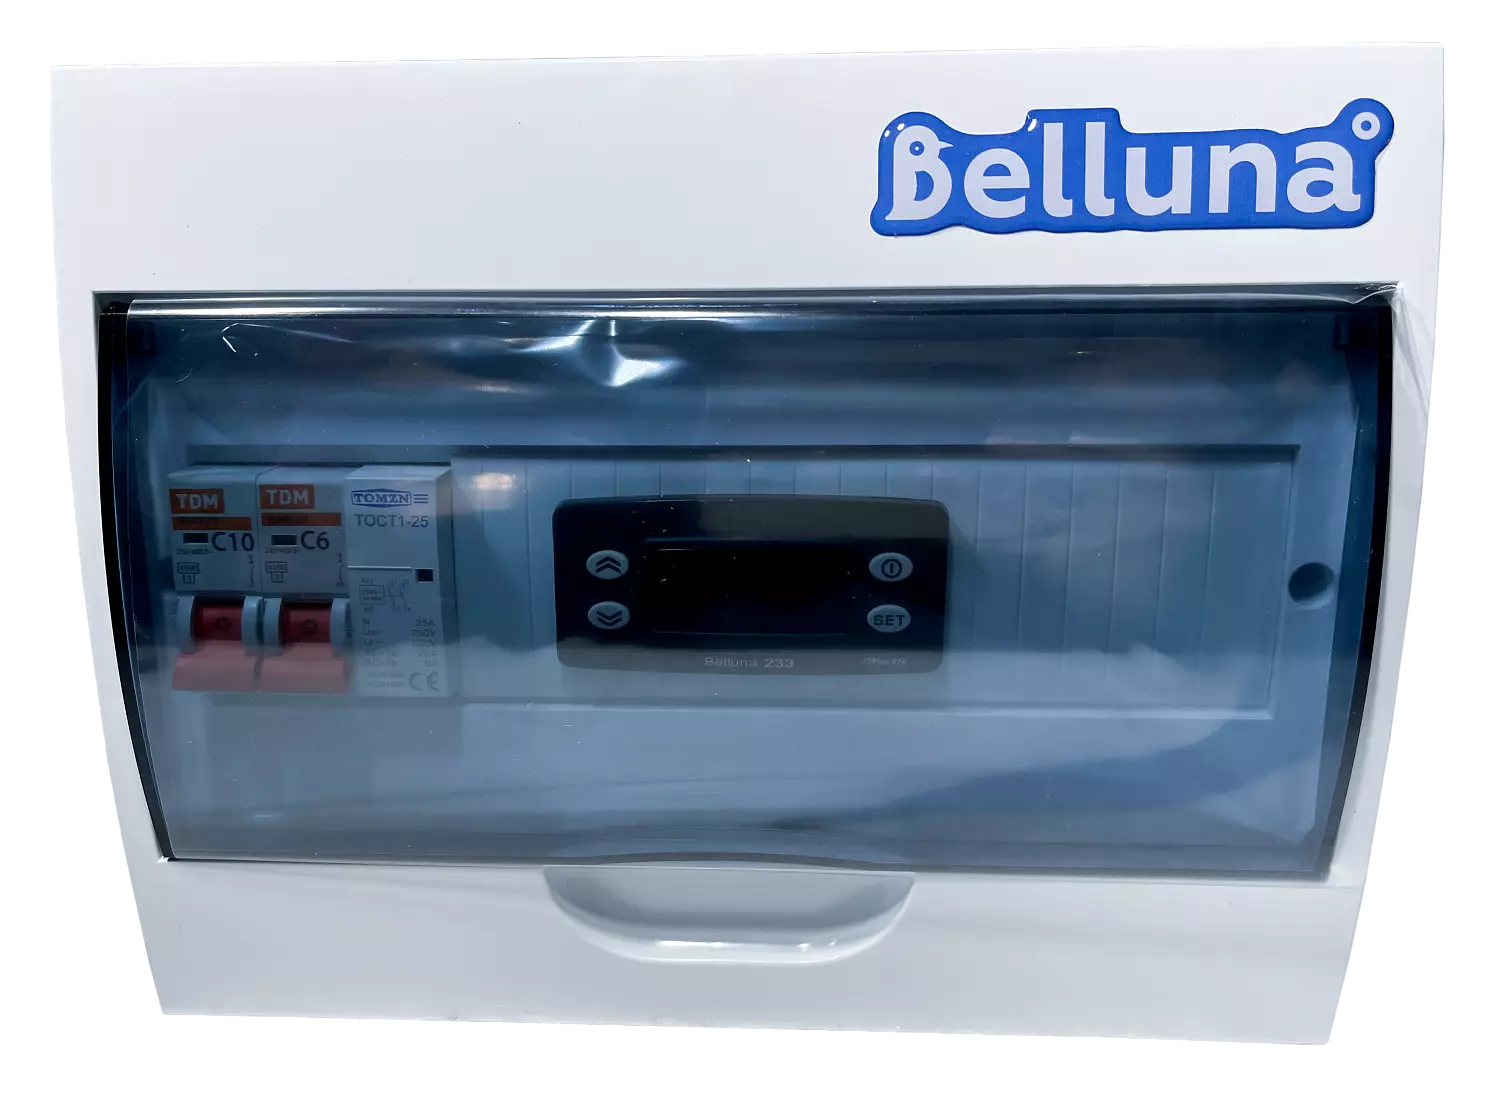 сплит-система Belluna U316 Челябинск